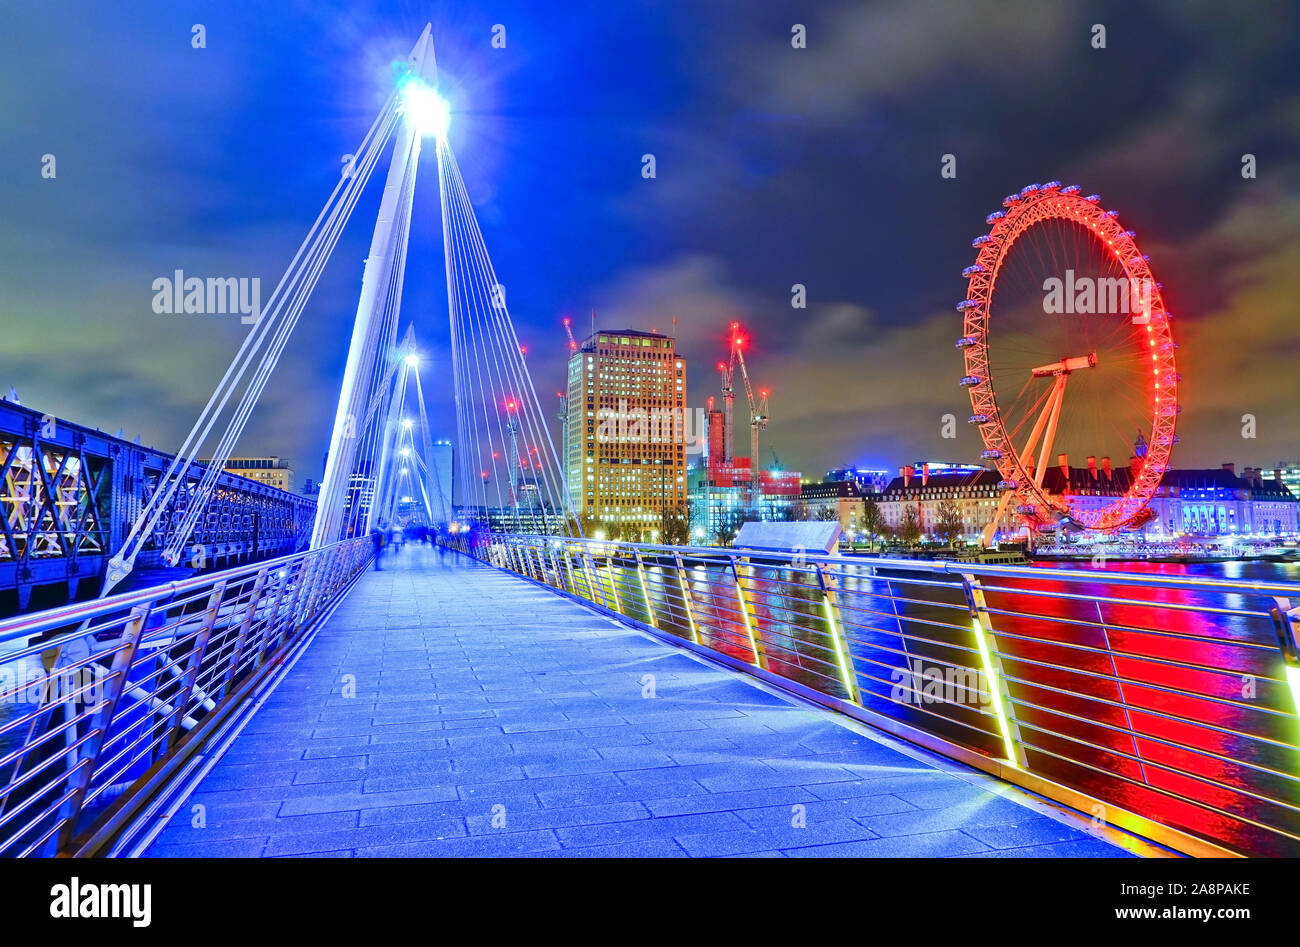 Golden Eye, London!  London eye at night, London eye, Famous places